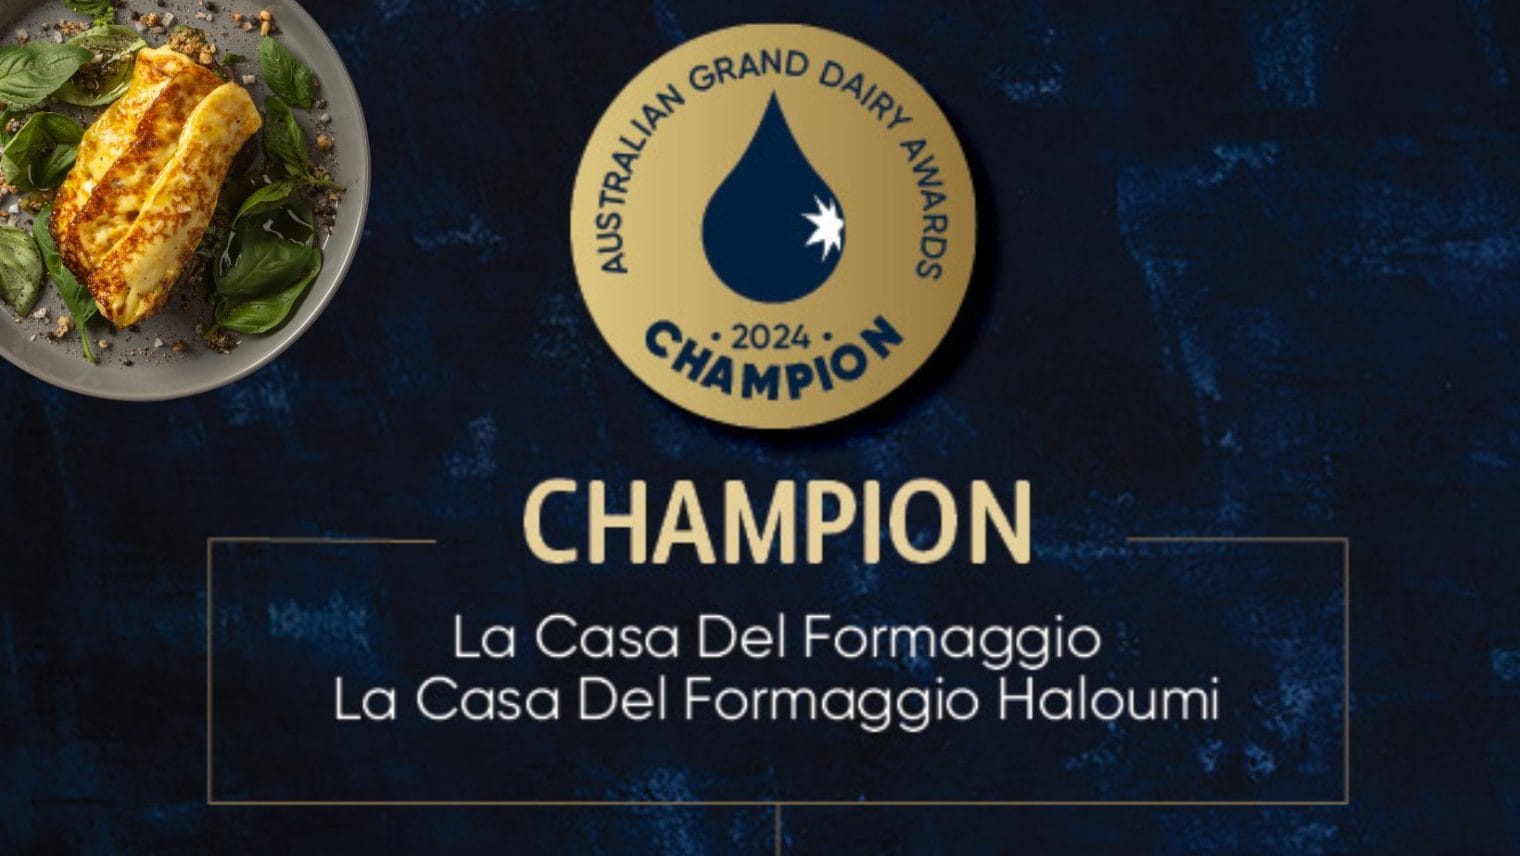 La Casa Del Formaggio Award Winning Haloumi